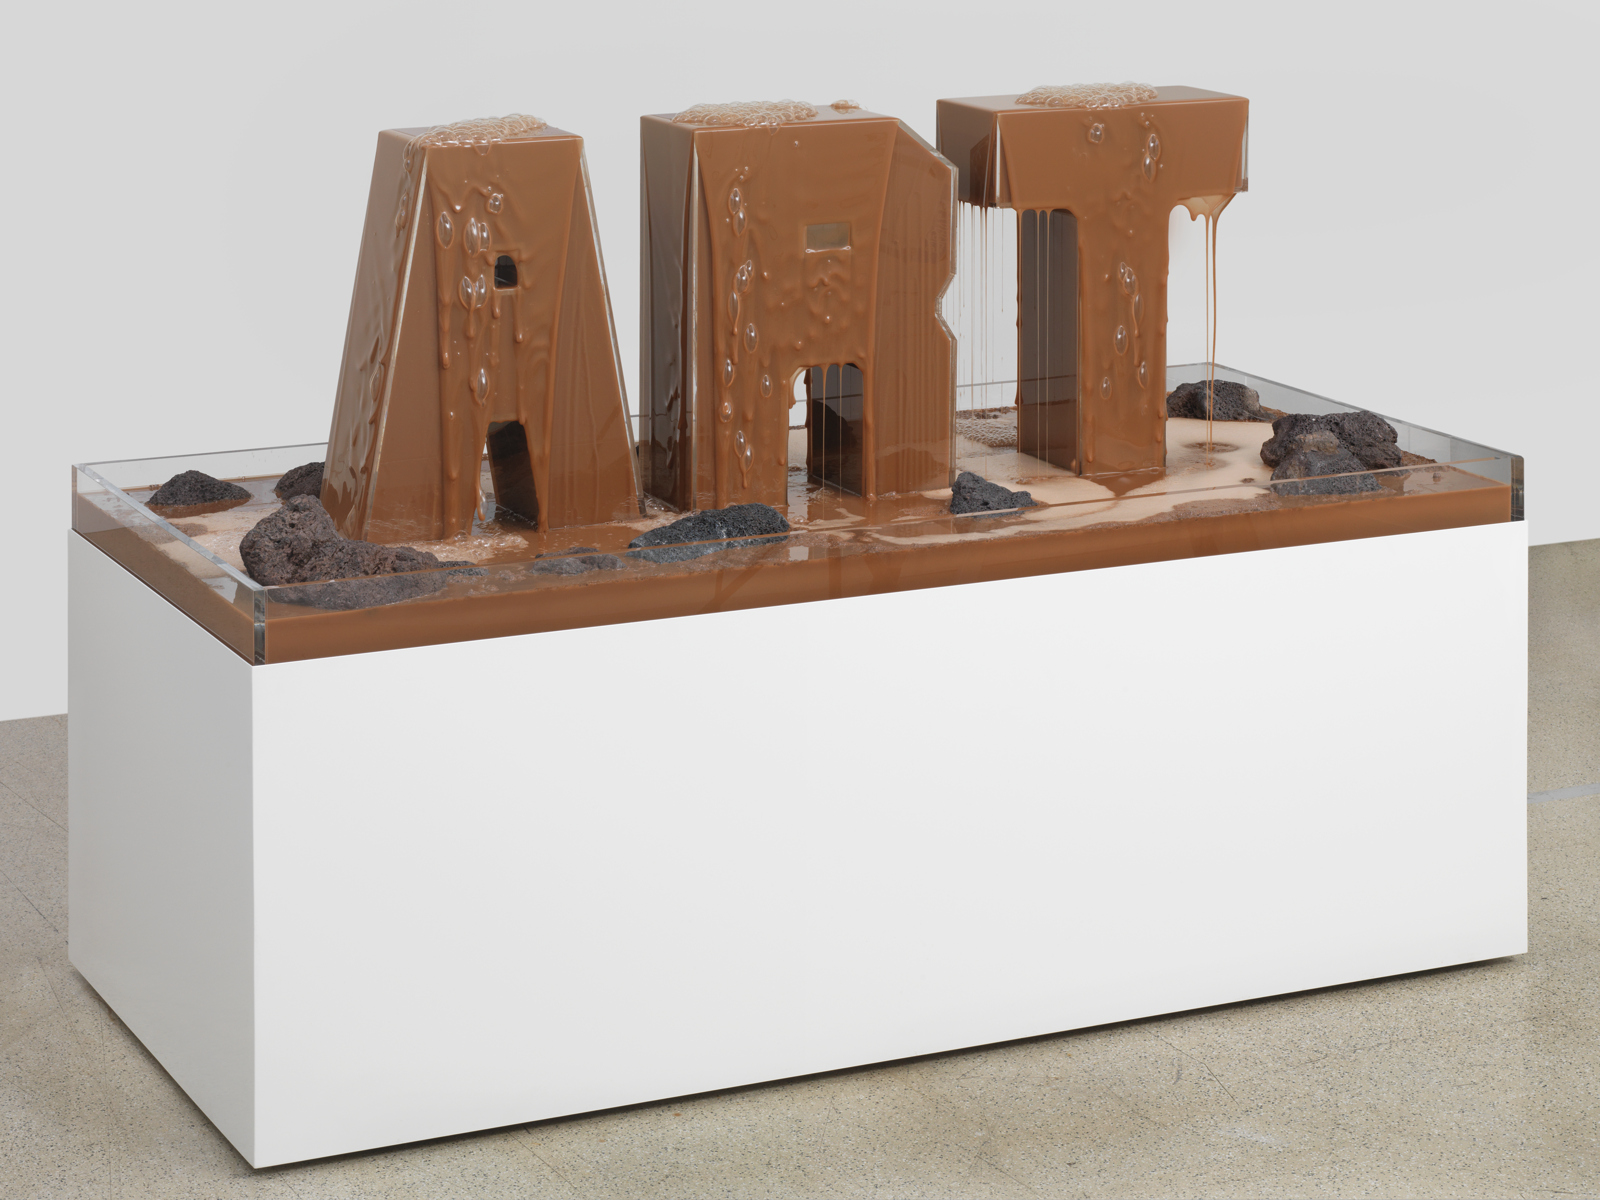 Doug Aitken / Galerie Eva Presenhuber